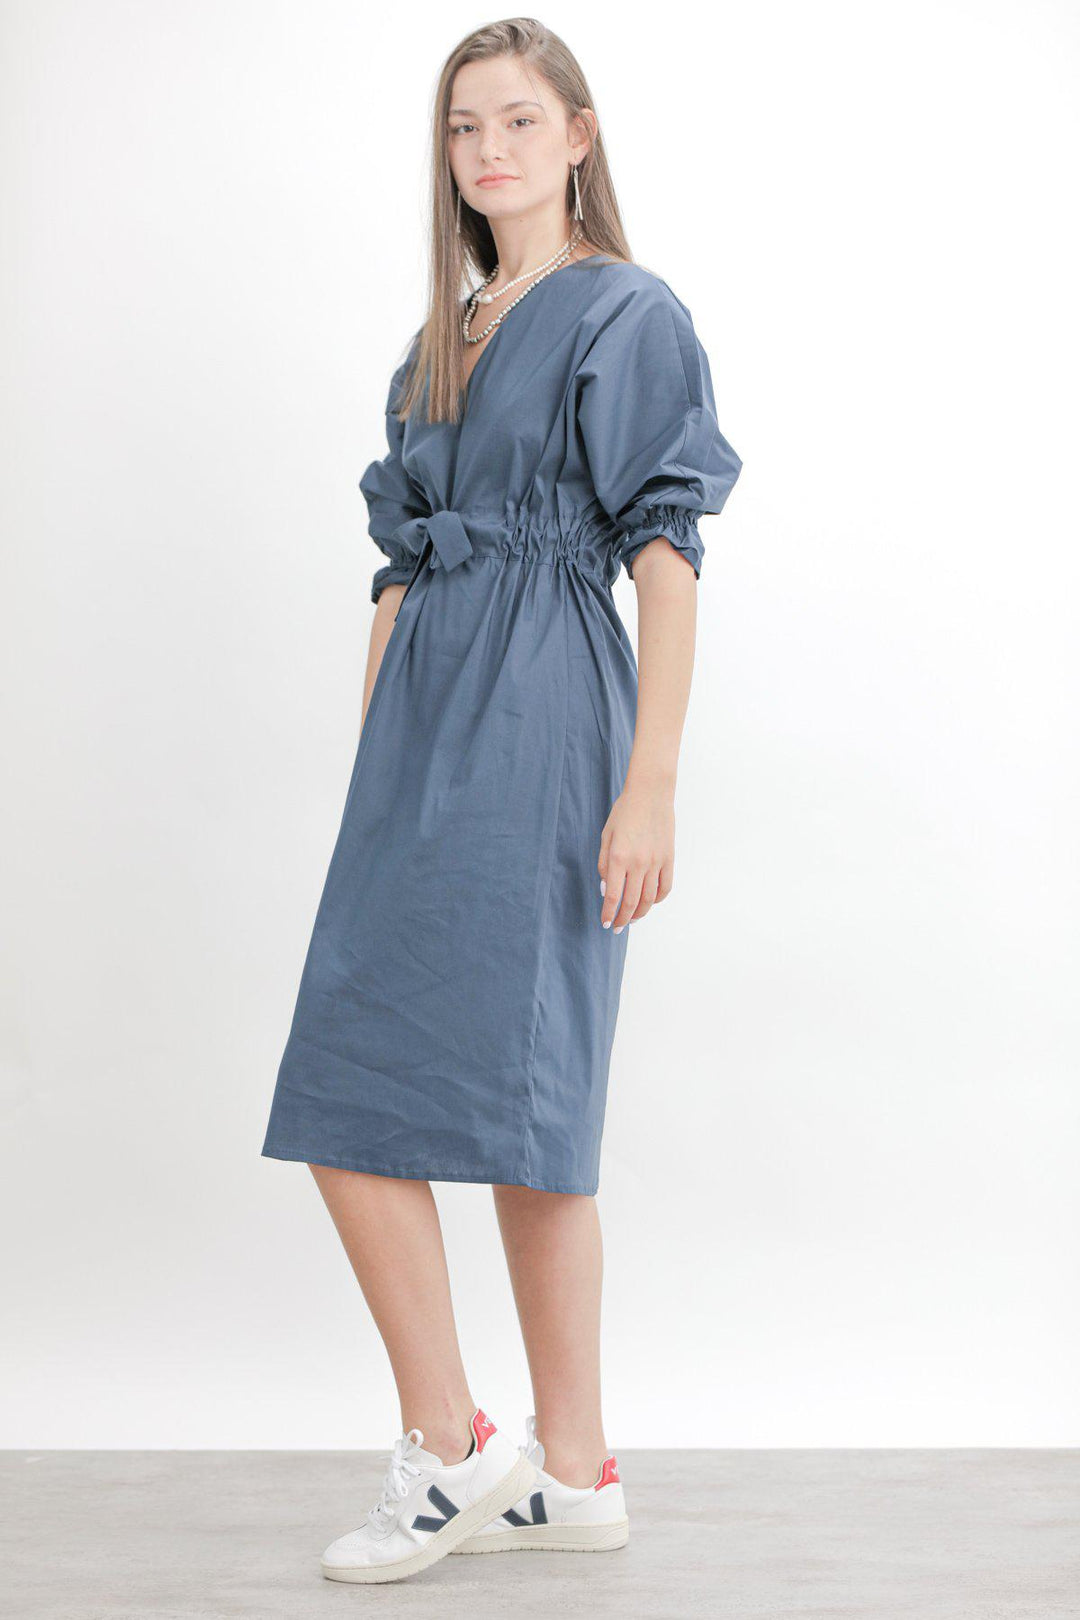 שמלת חגורה בצבע כחול - Ayelet Weinman